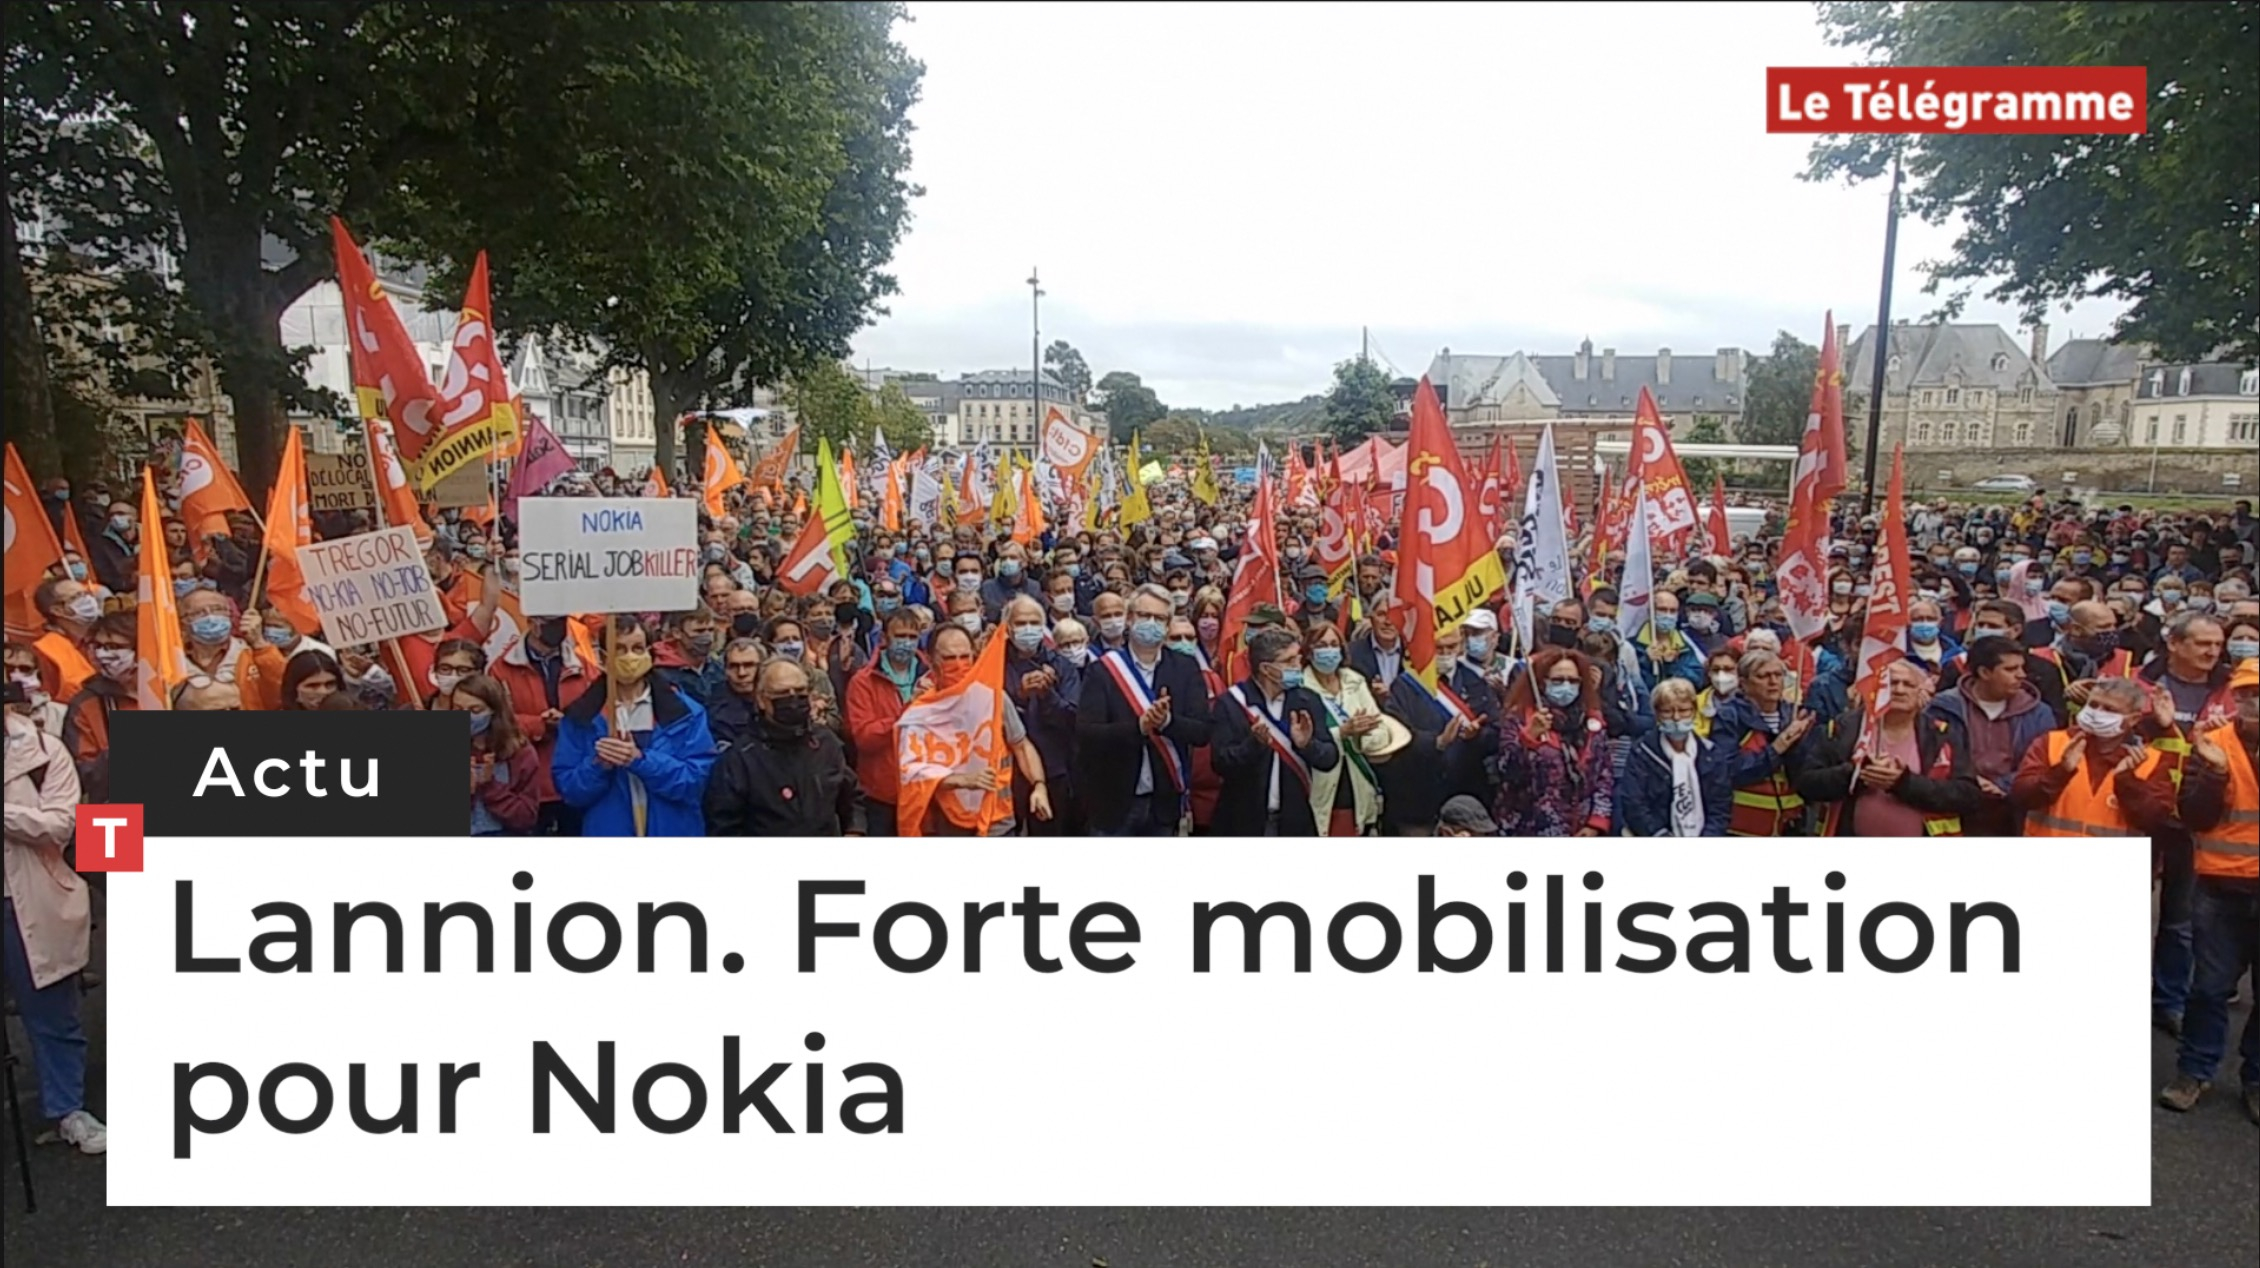 Lannion. Forte mobilisation pour Nokia (Le Télégramme)